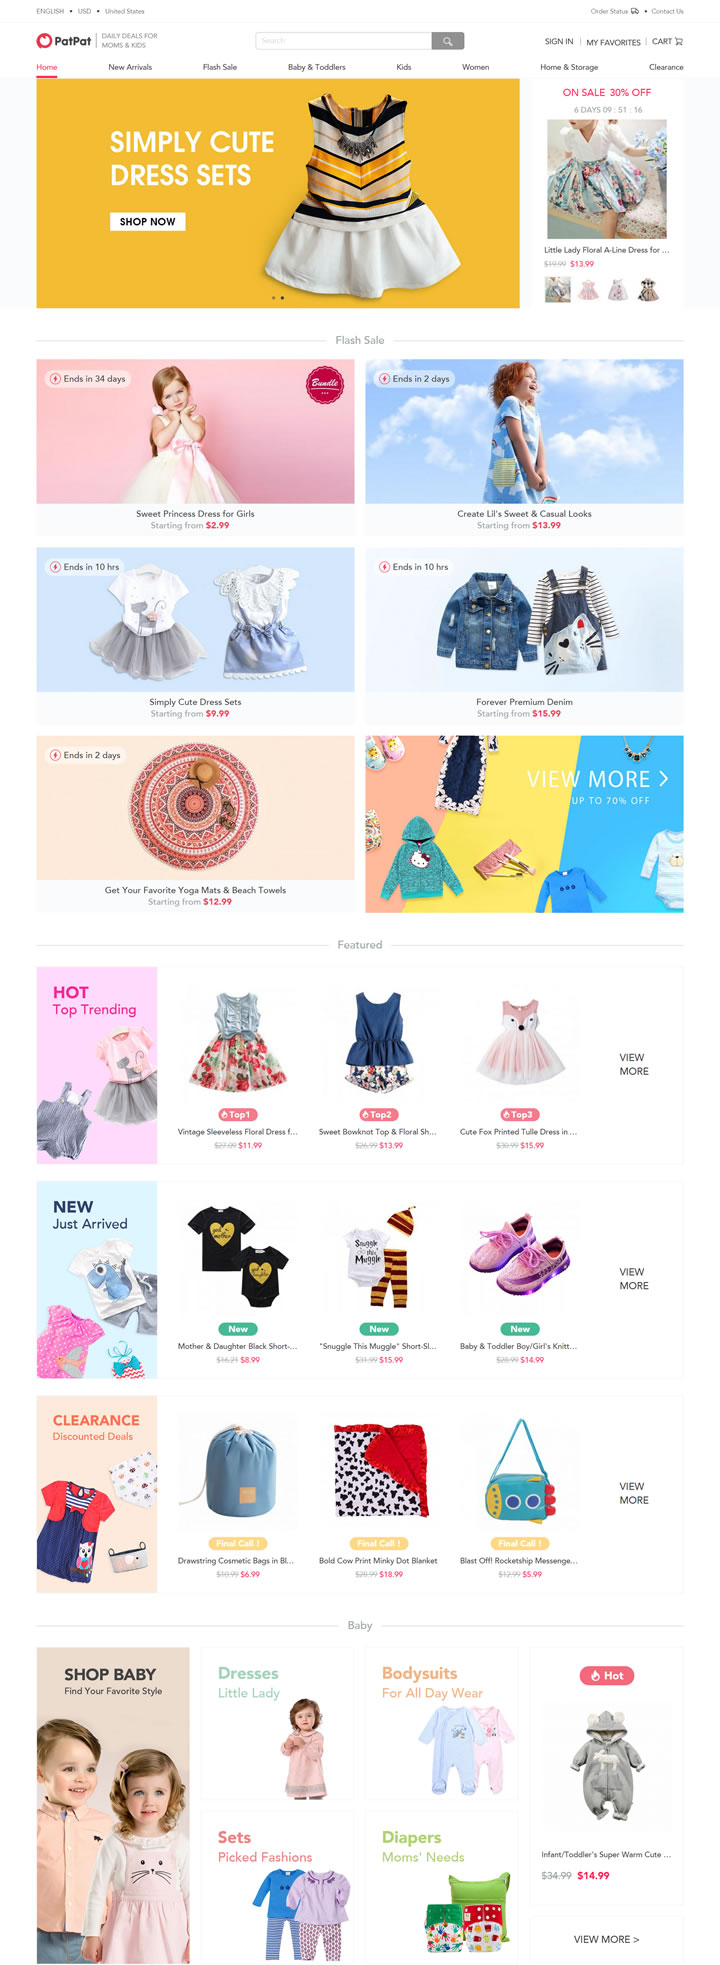 美国婴儿和儿童服装购物网站：PatPat